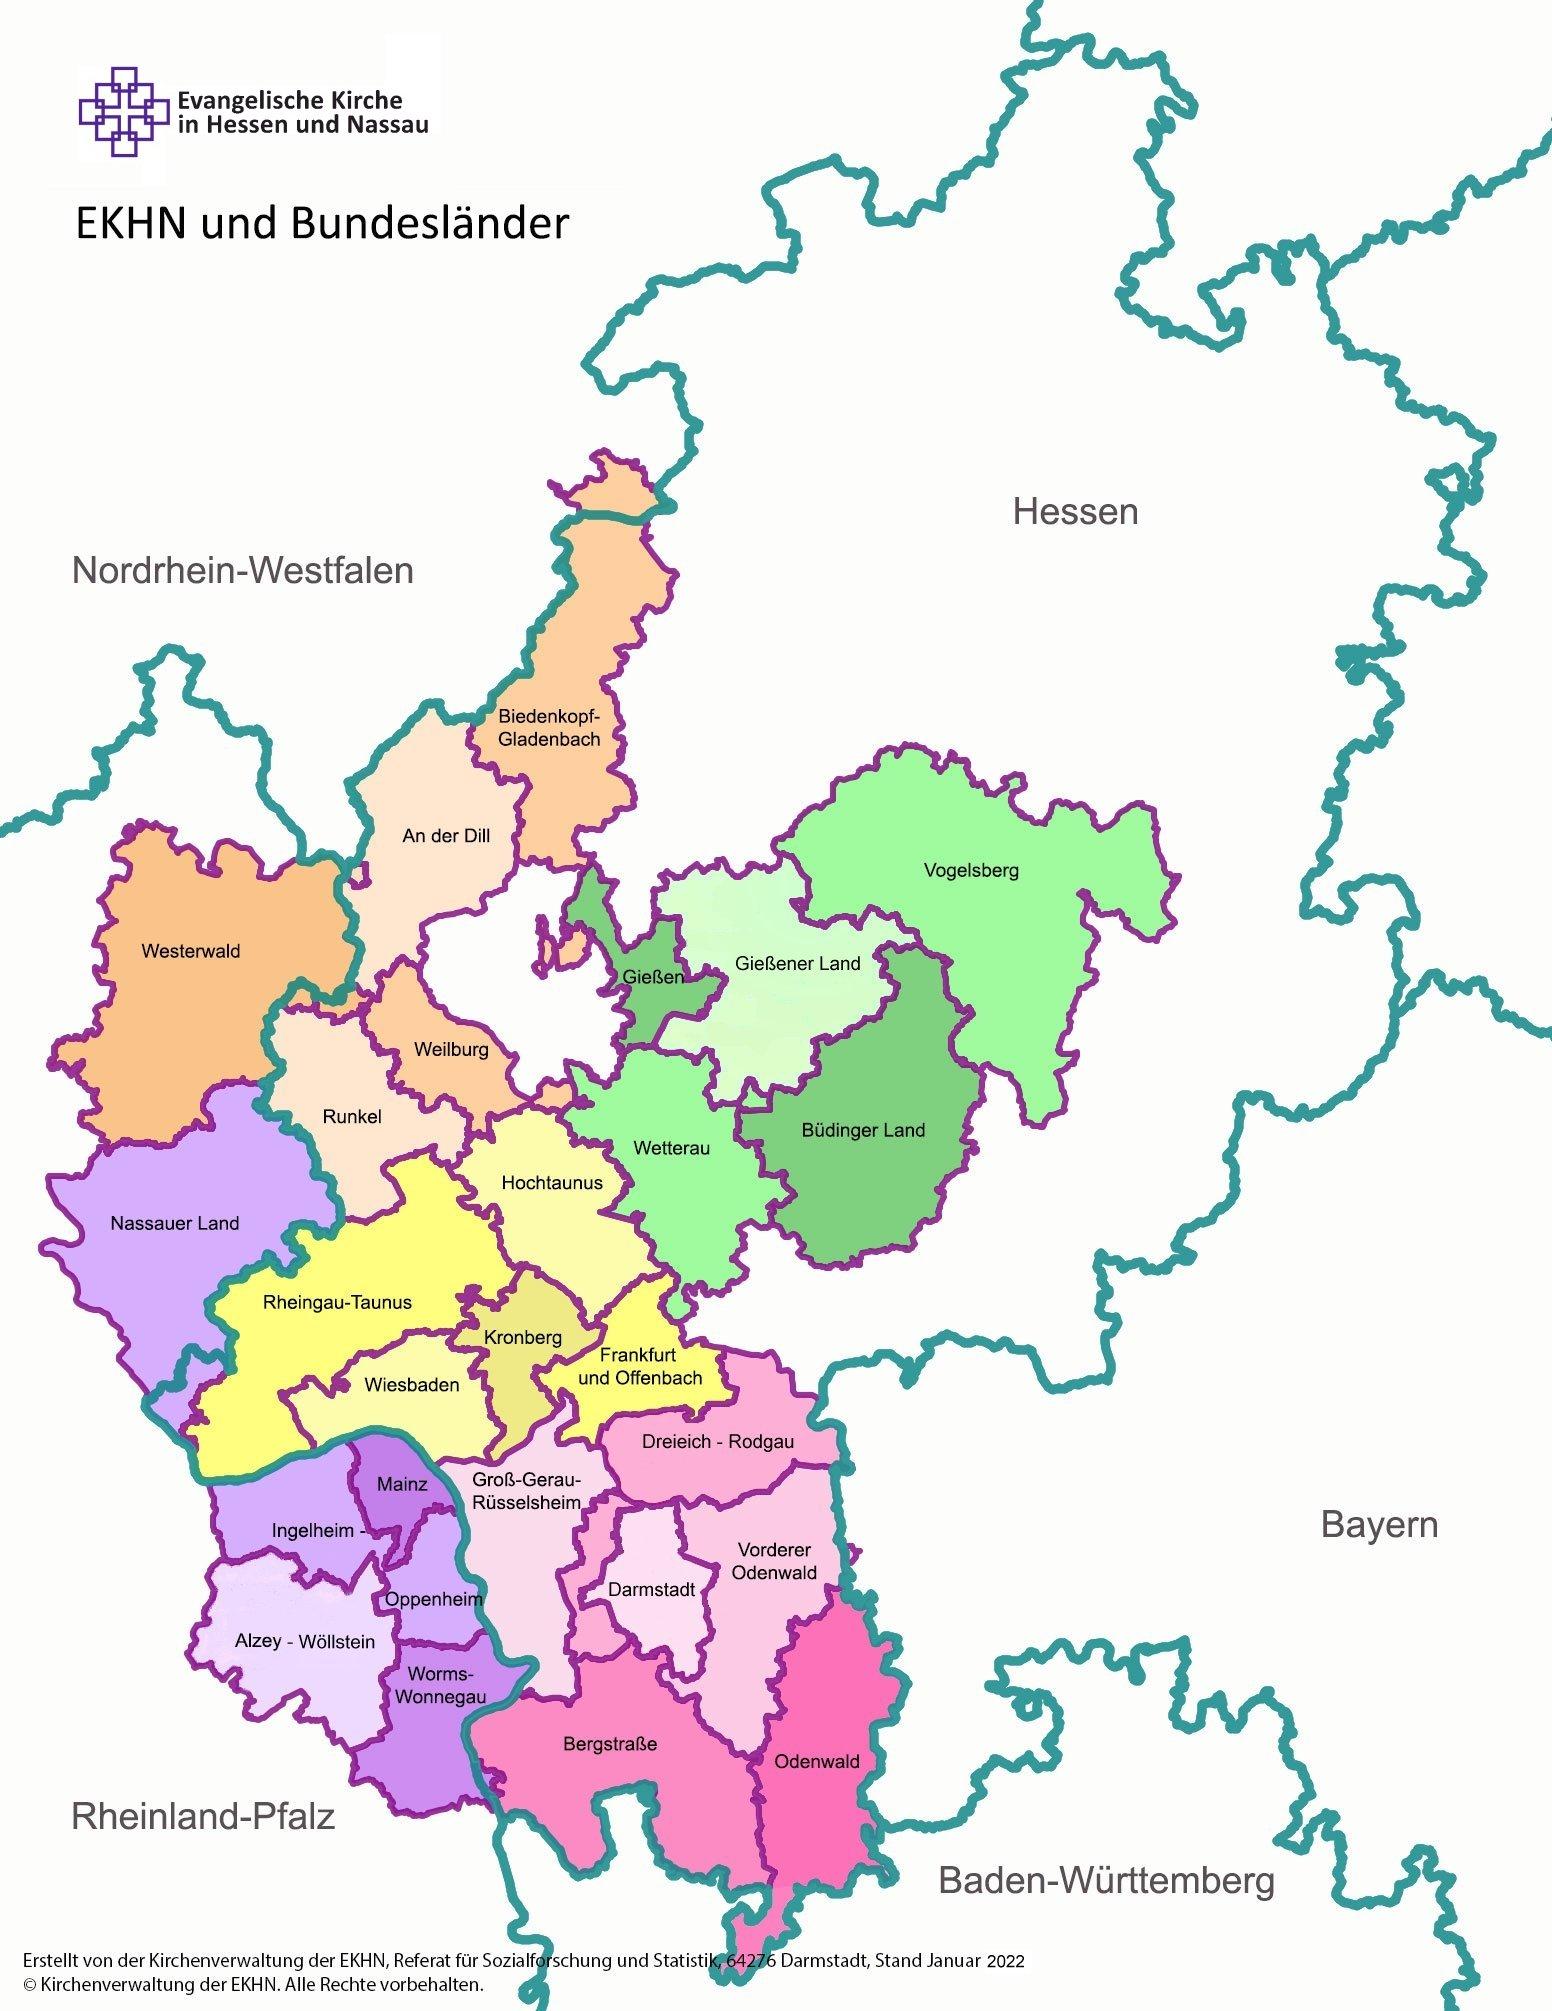 Bundesländer Hessen und Rheinland-Pfalz mit den Dekanaten in Hessen-Nassau